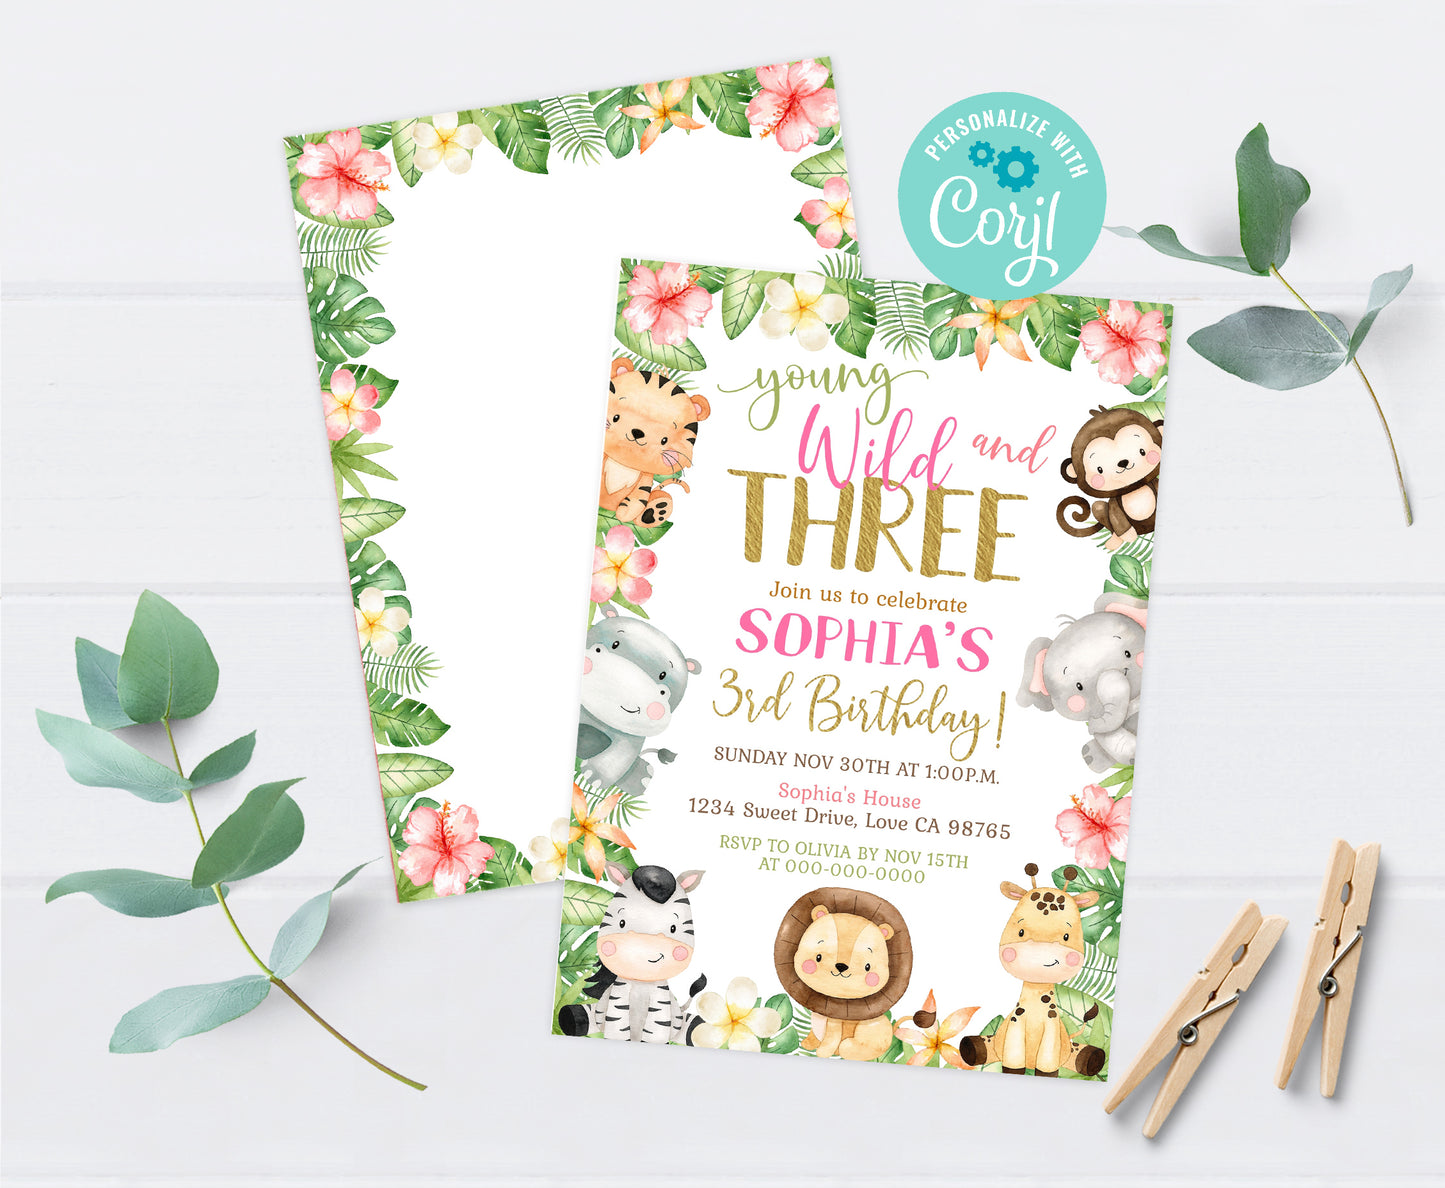 Young Wild and Three Invitation | Editable Girl Safari Birthday Party Invite - 35E